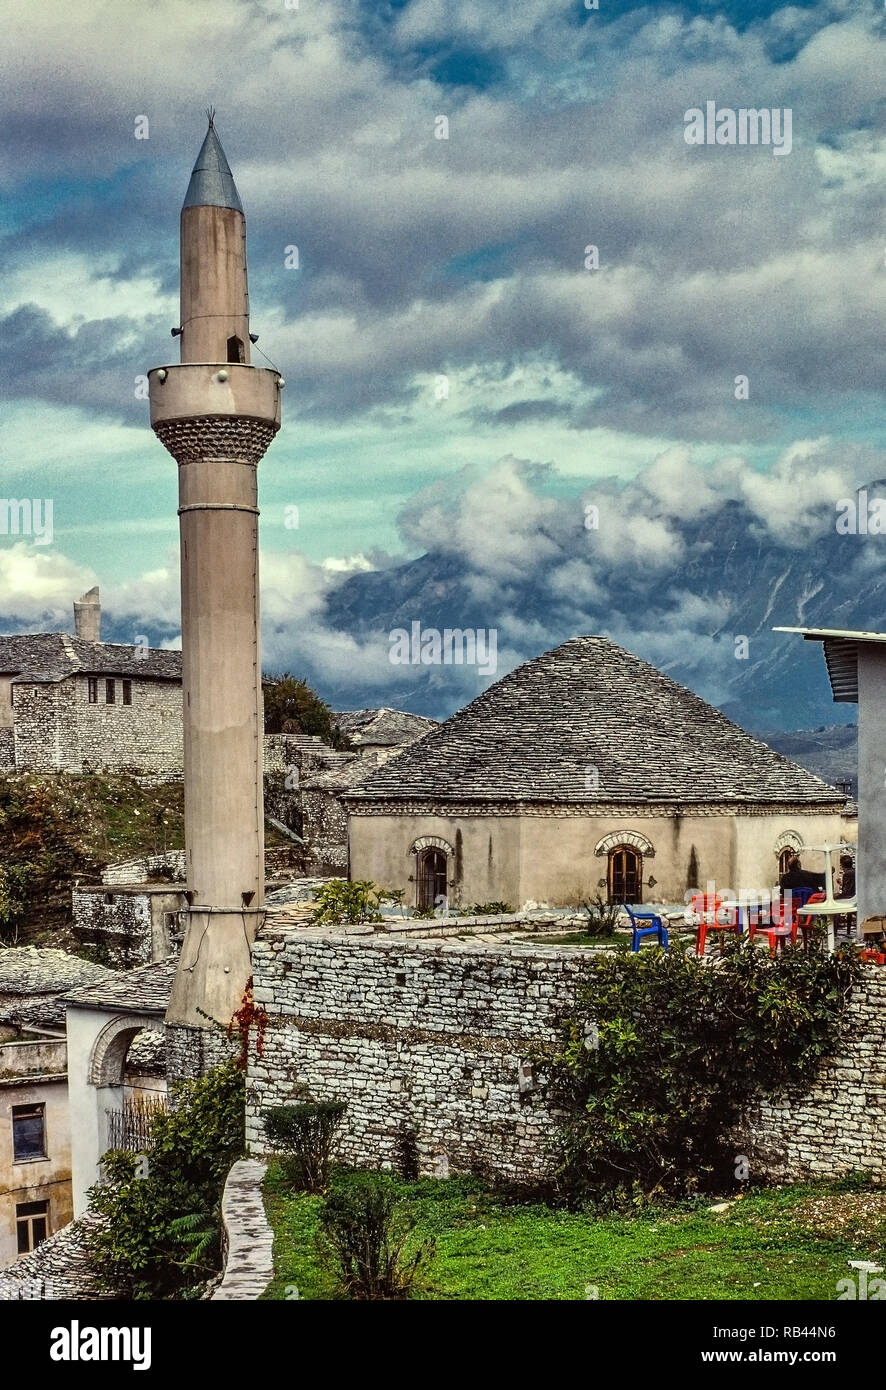 Minareto della moschea Argirocastro. L'Albania. Fotografia analogica Foto Stock